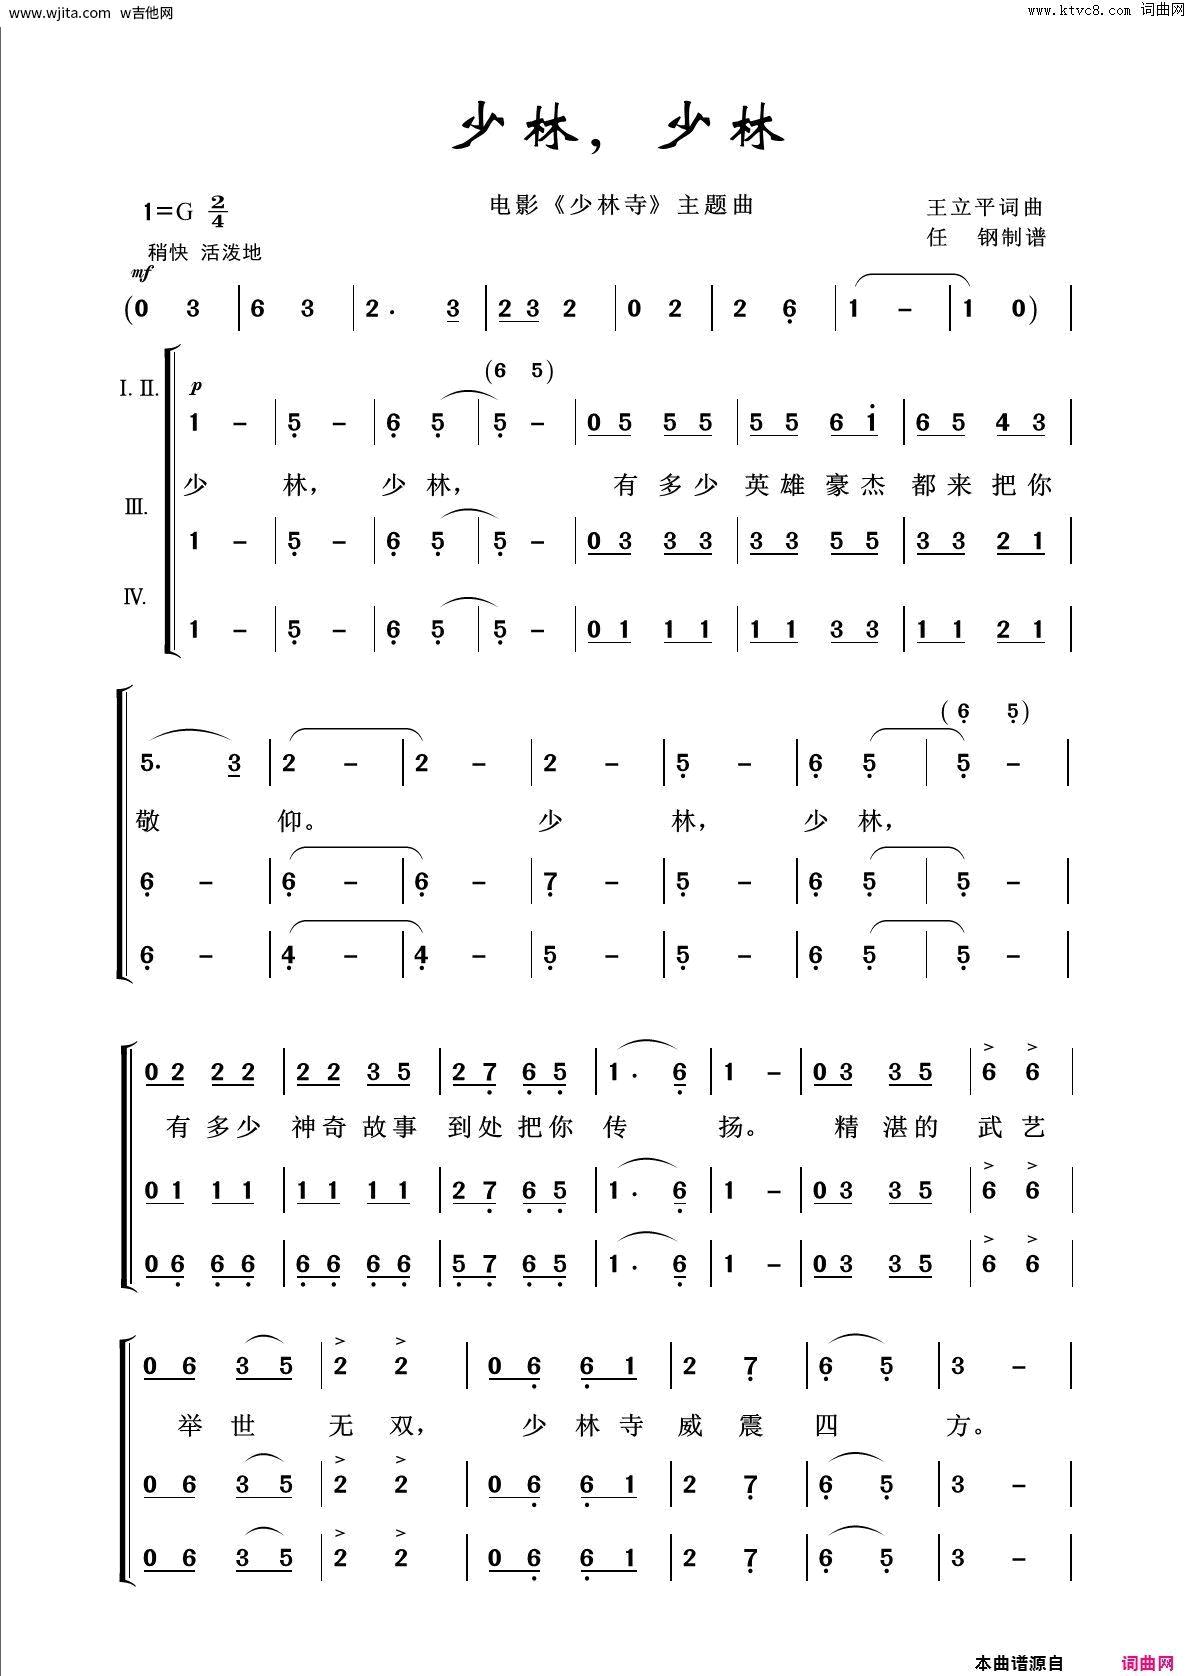 久远寺有珠-魔法使之夜OST-钢琴谱文件（五线谱、双手简谱、数字谱、Midi、PDF）免费下载